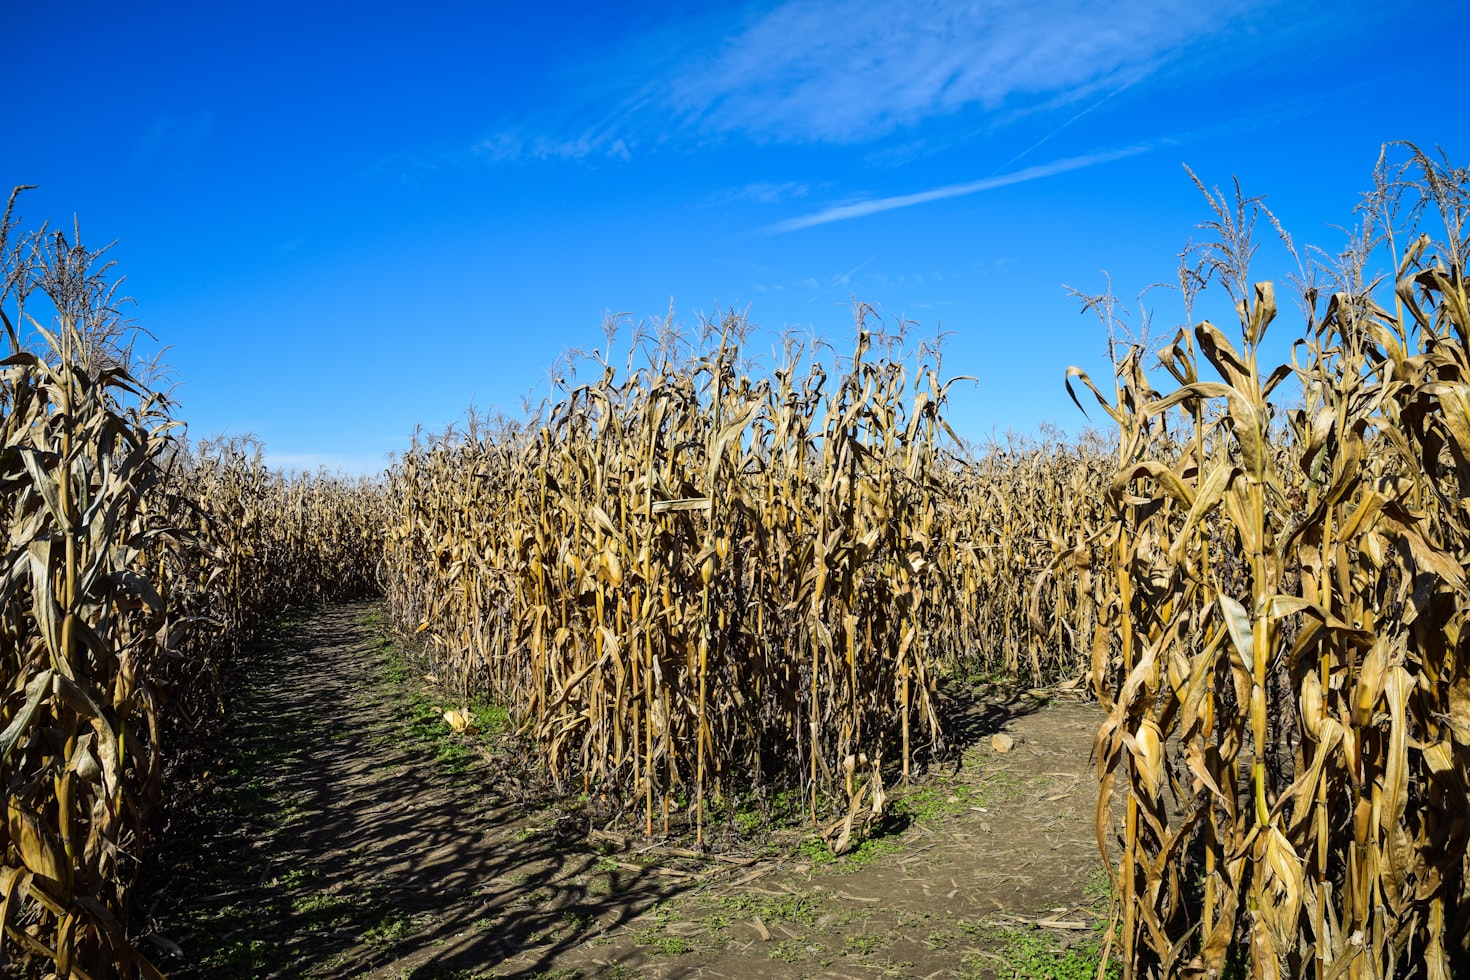 Local farm’s 30th anniversary corn maze honors QB Josh Allen